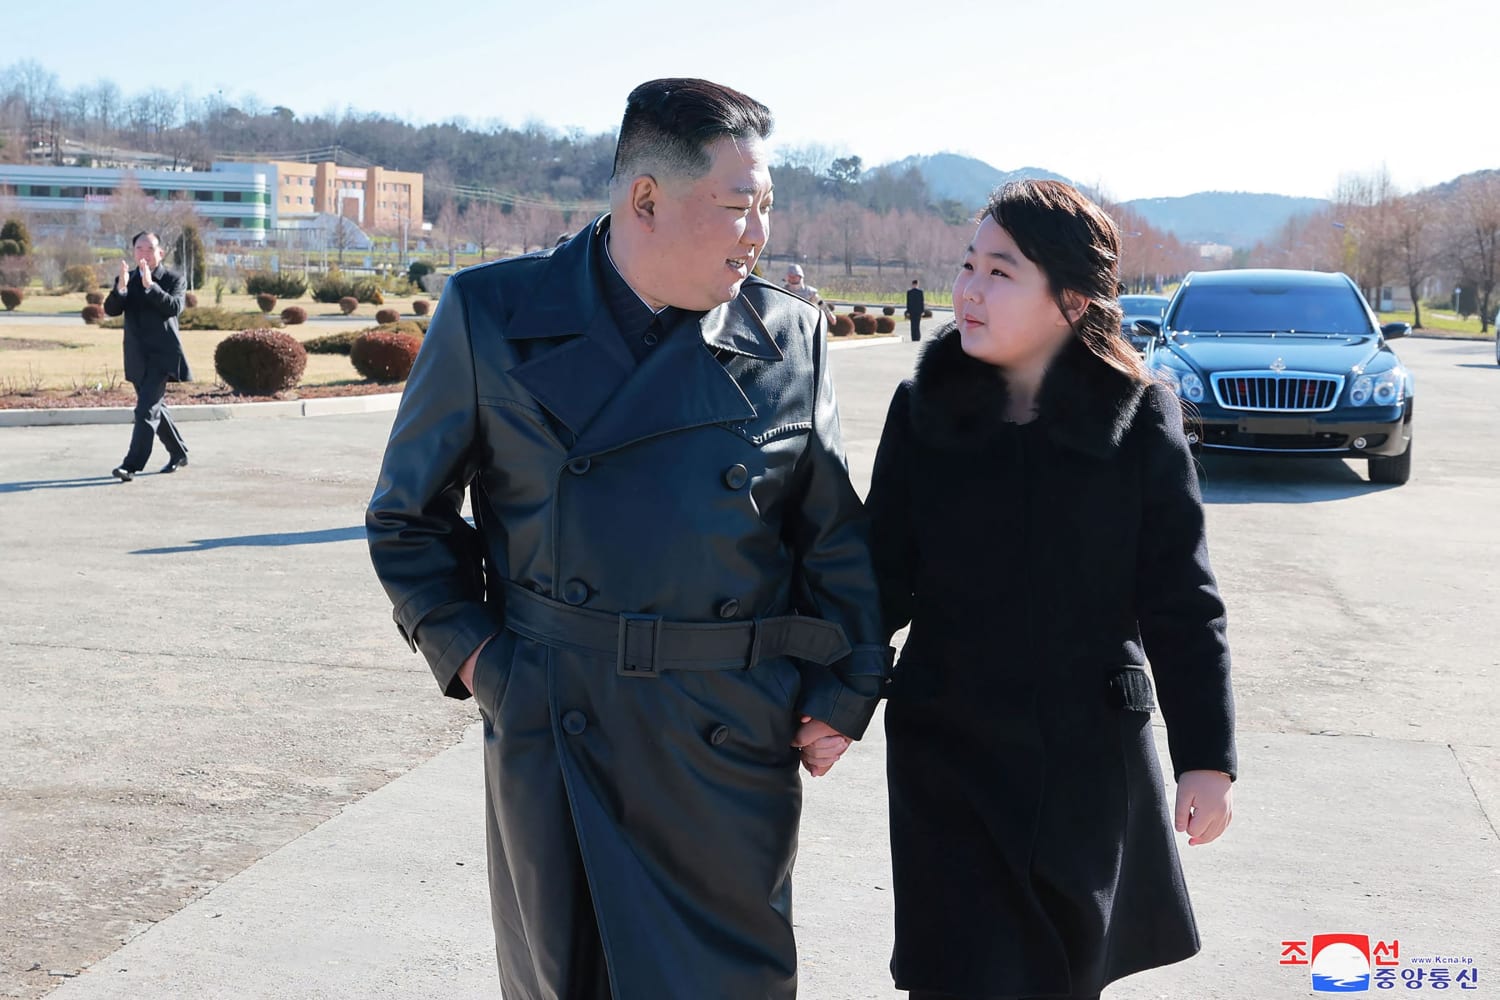 [Post oficial Corea del norte] Vida, obra y milagros de una dinastia comunista 221127-kim-daughter-ha-3ba357